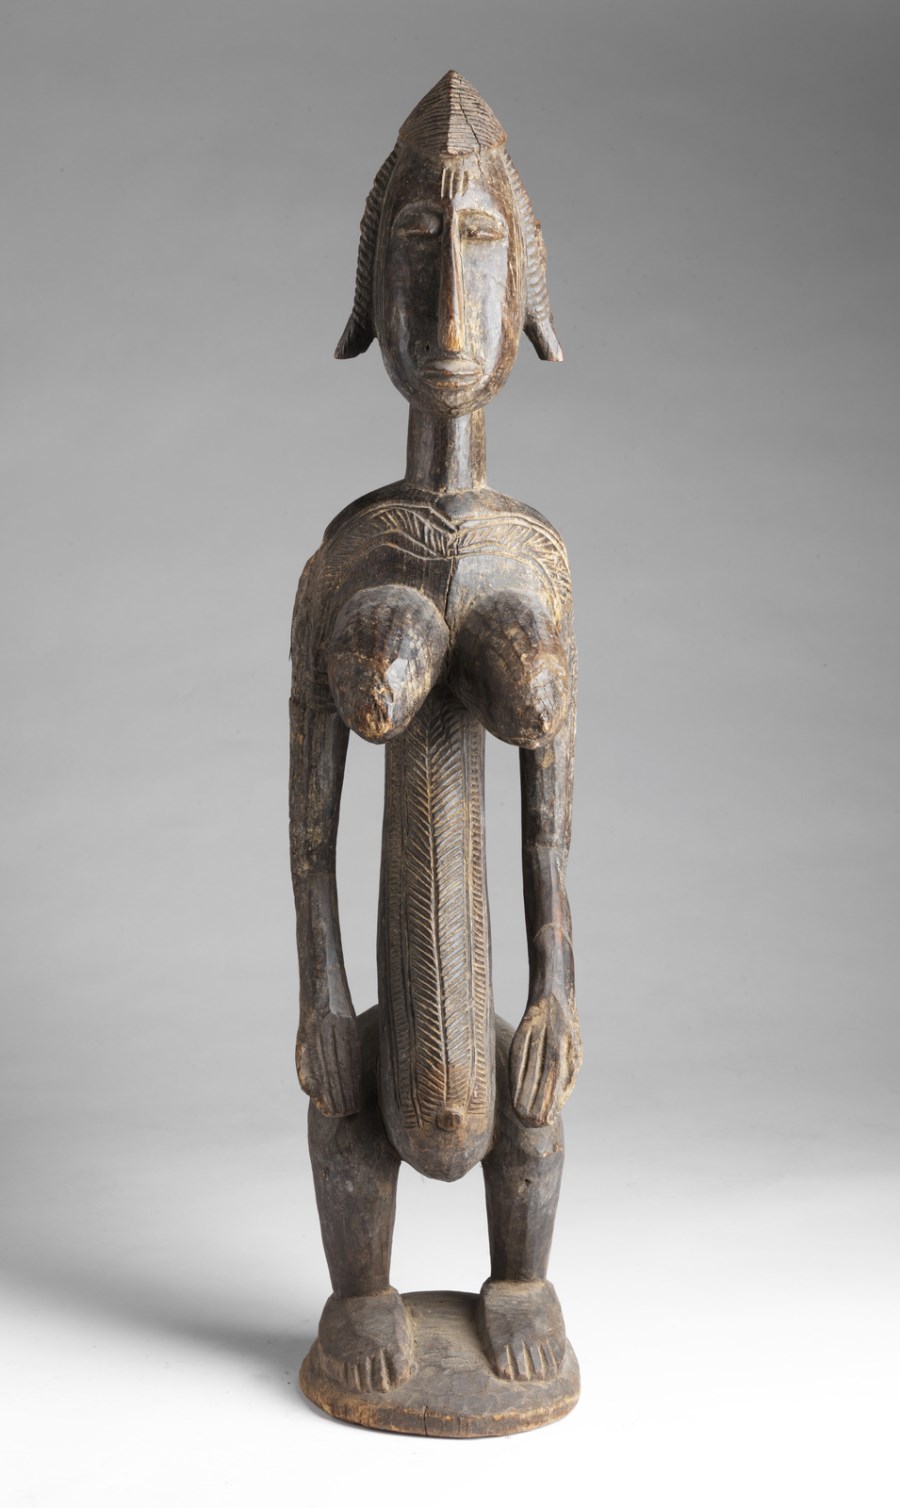 Giovane donna, Bambara
Mali (Arte Africana )